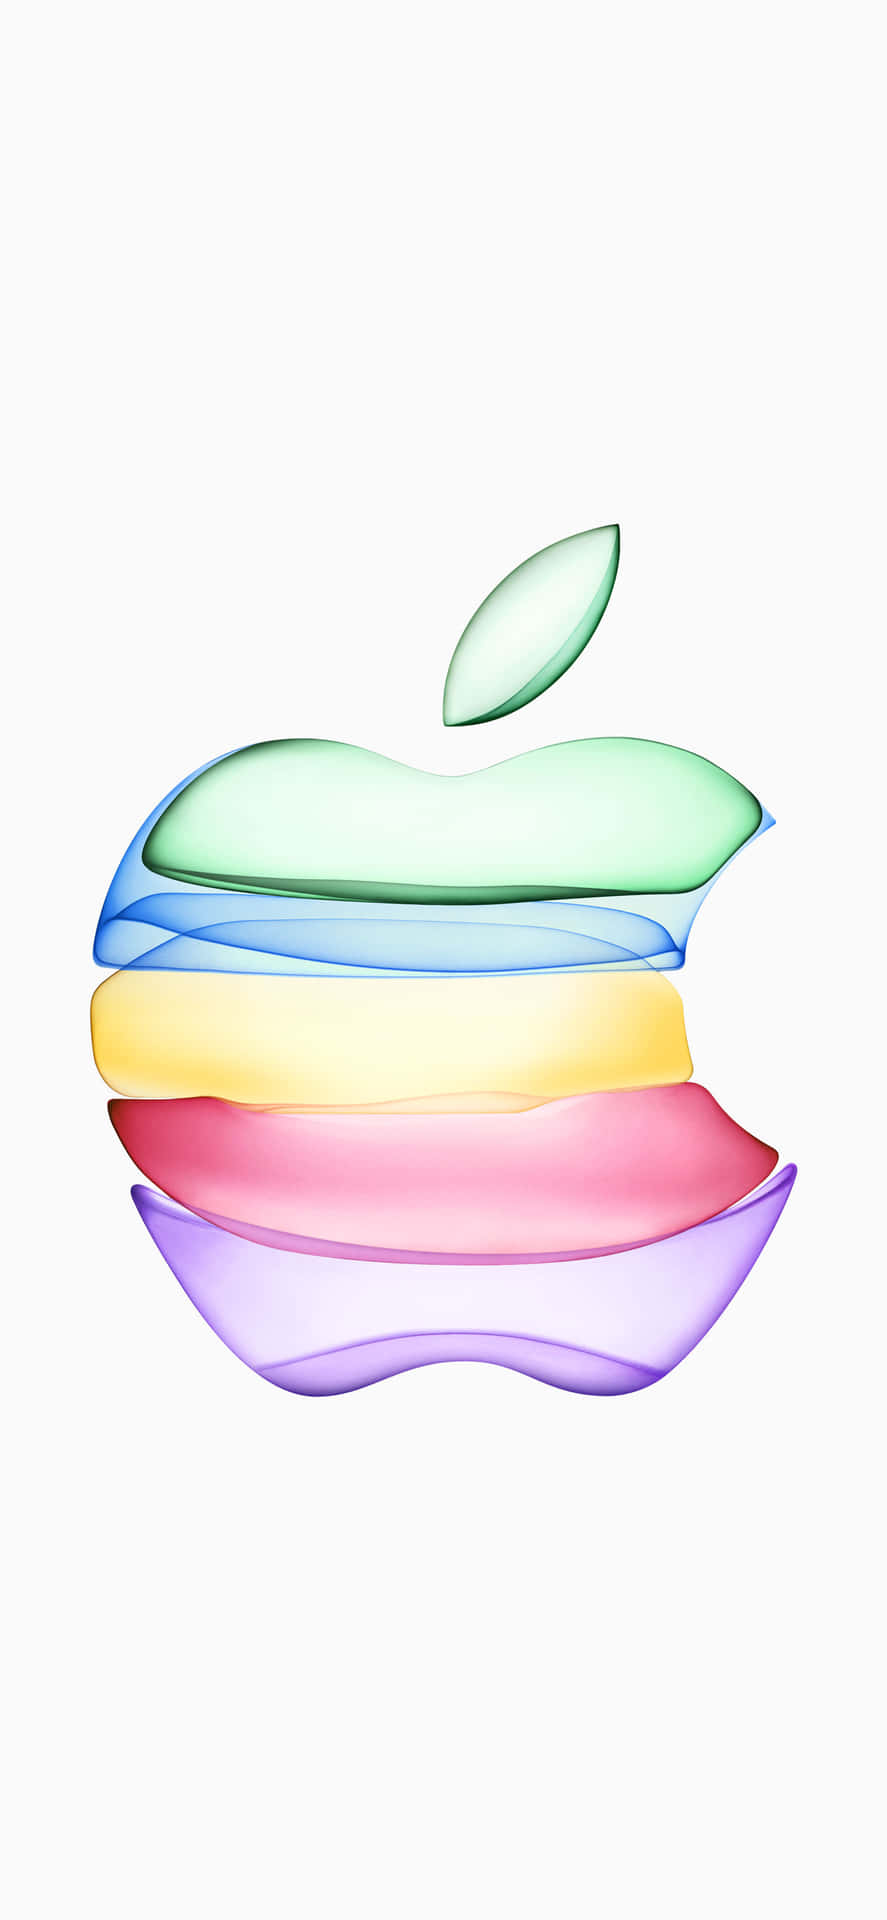 Download iPhones Xs Max Rainbow Apple Logo Wallpaper